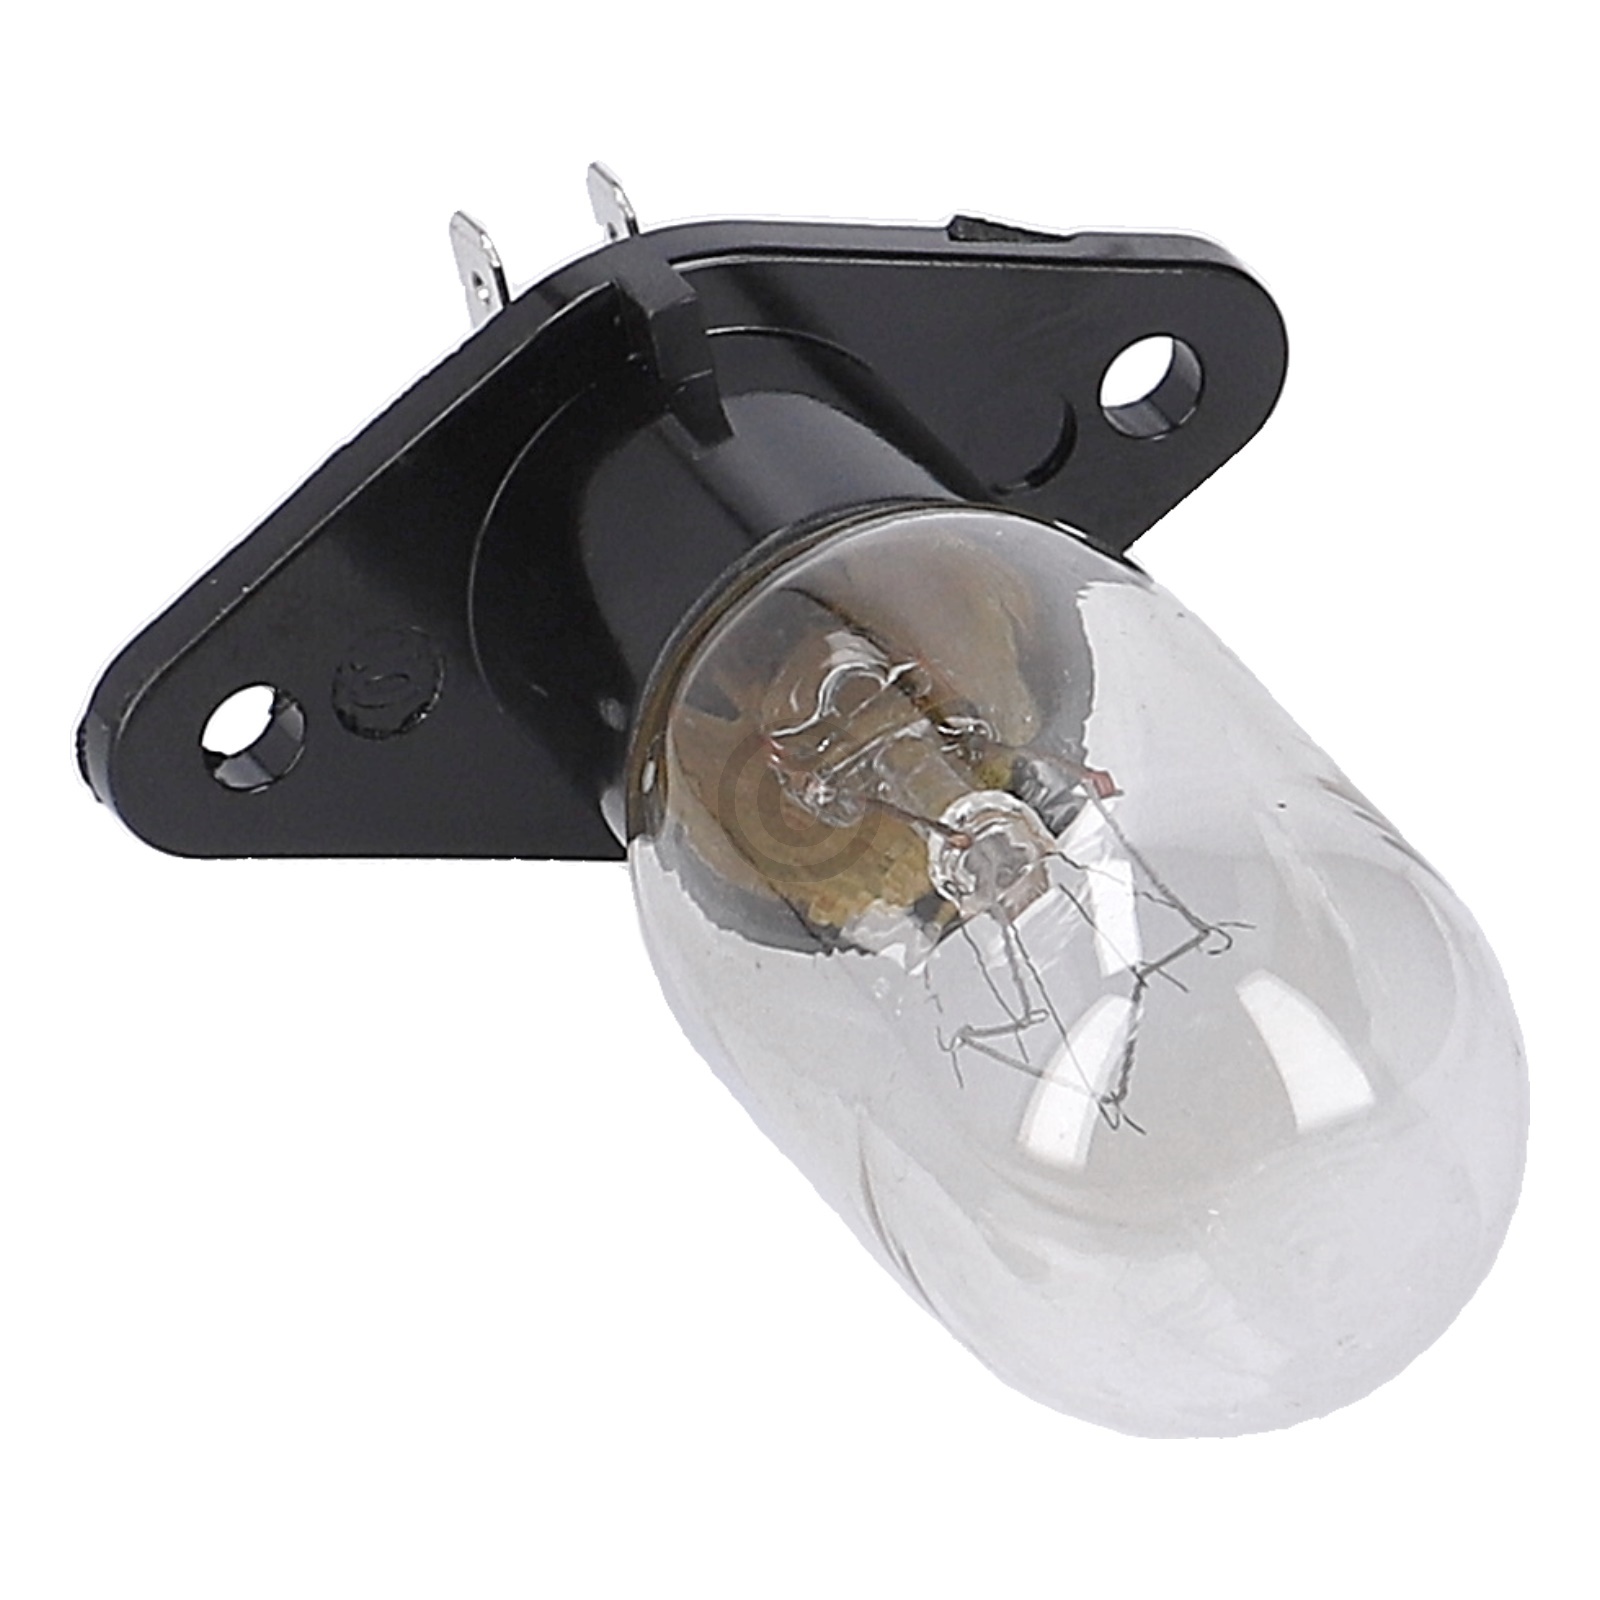 Lampe 25W 240V mit Sockel 2x4,8mmAMP LG 6912W3B002D  für Mikrowelle